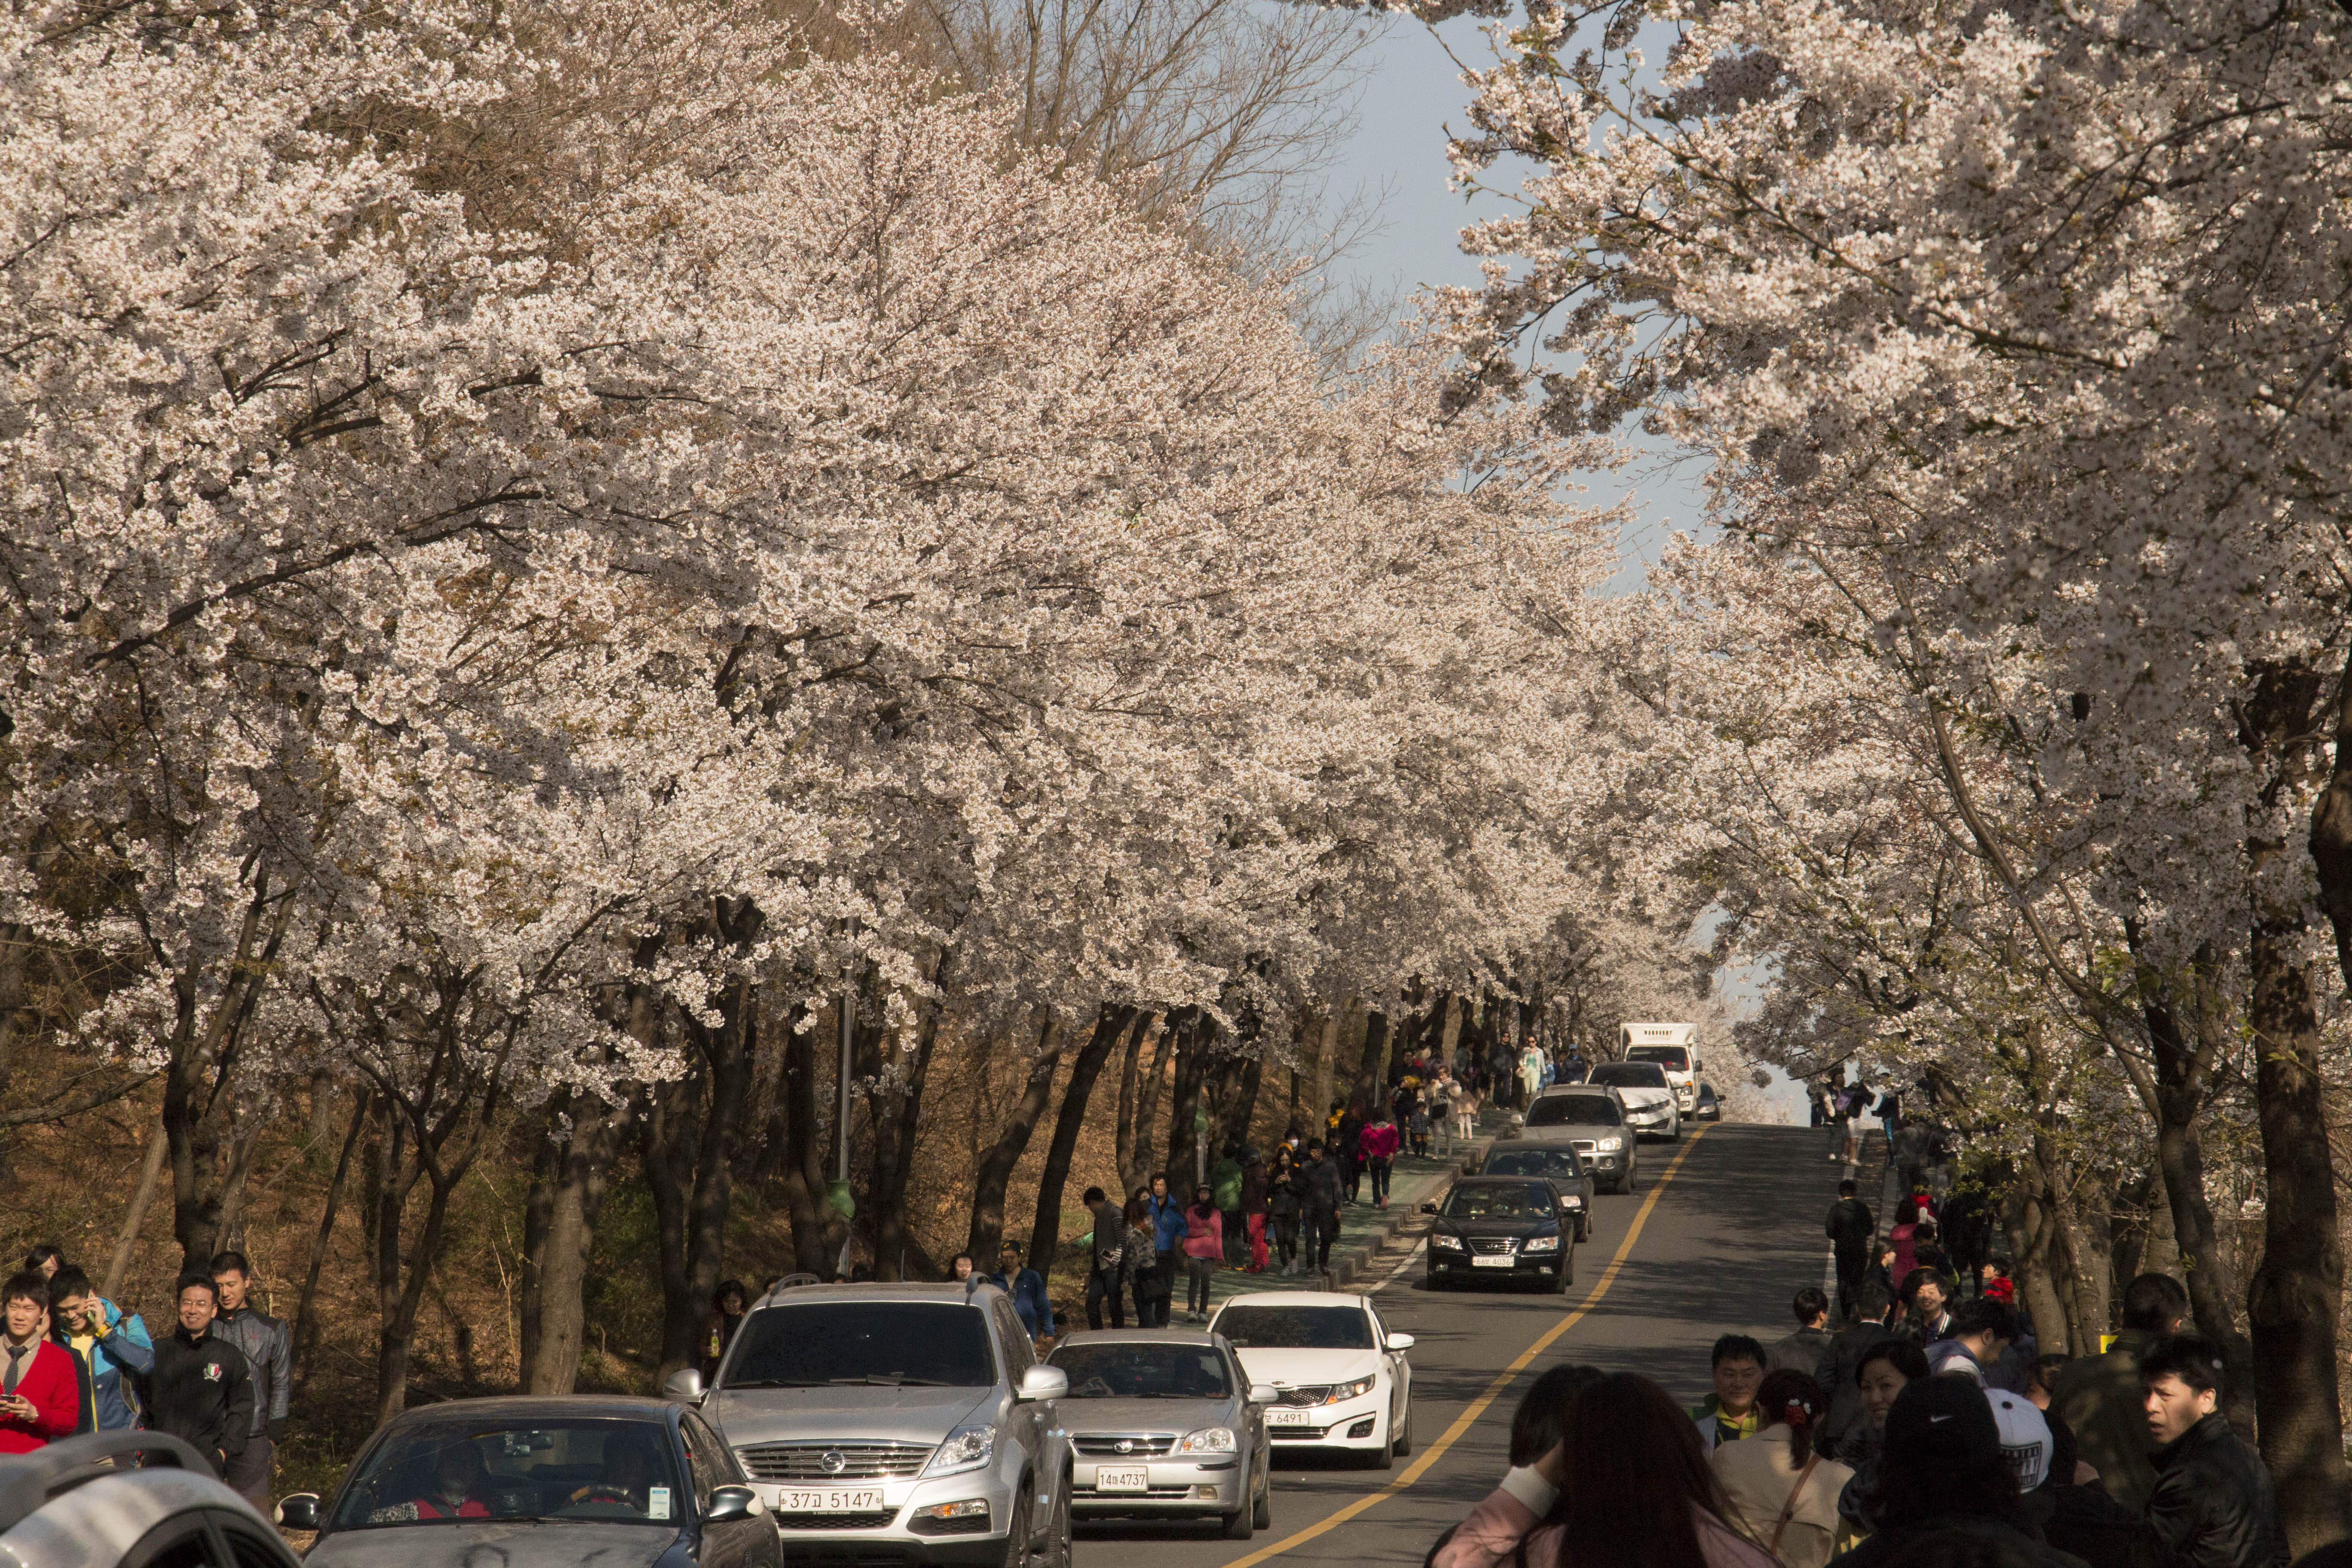 Jadwal Mekarnya Bunga  Sakura  di  Korea  Selatan  Skyscanner 